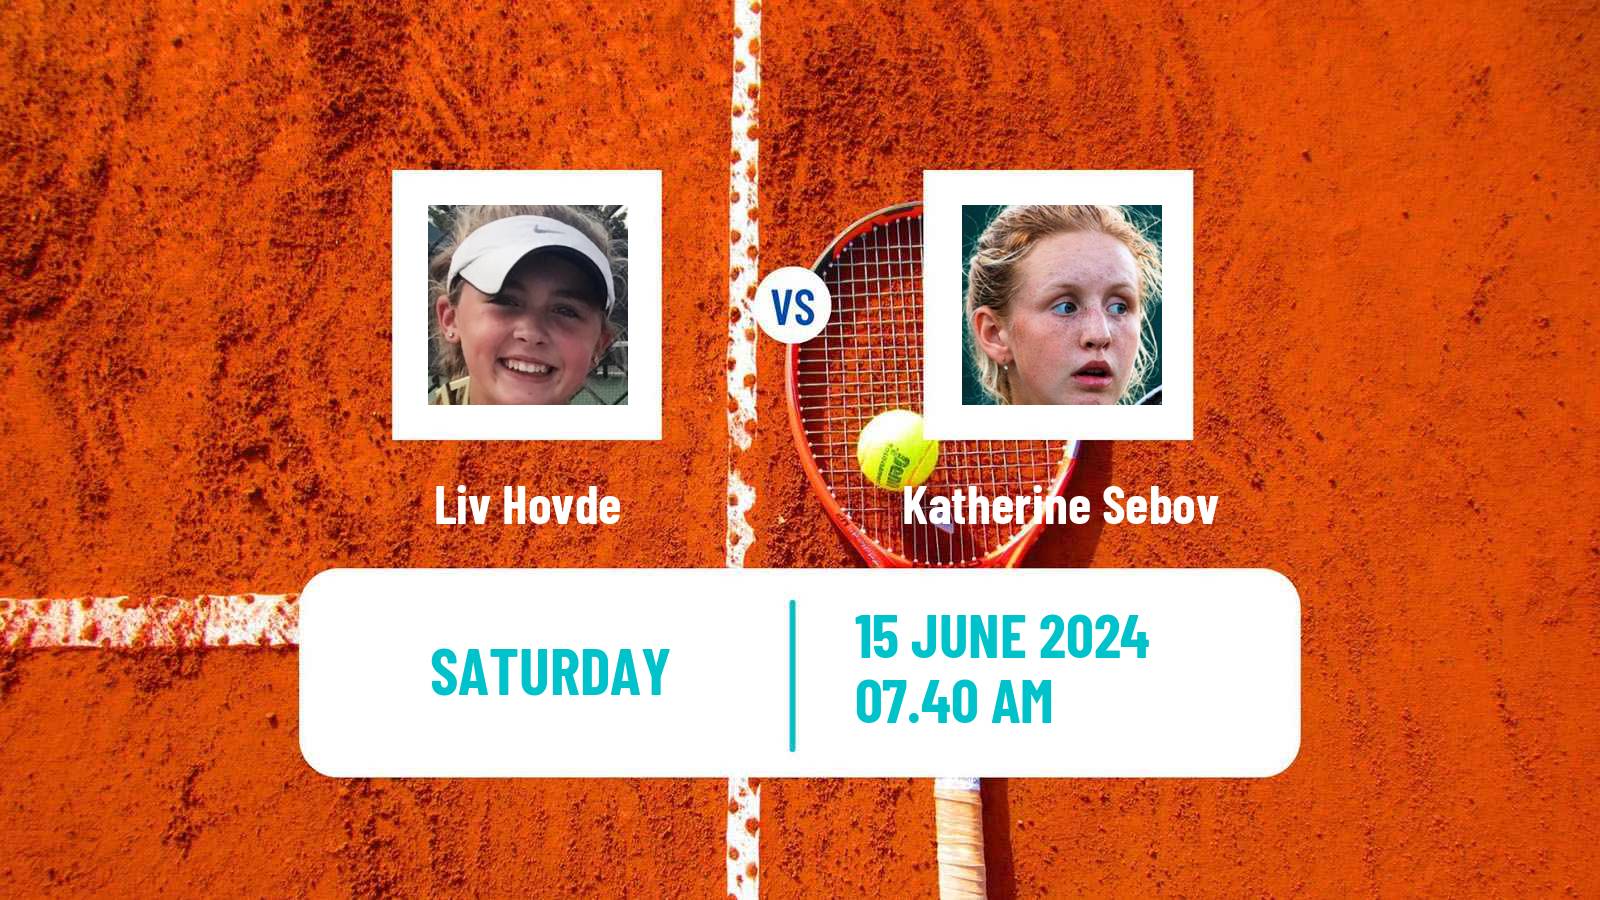 Tennis ITF W75 Guimaraes Women Liv Hovde - Katherine Sebov